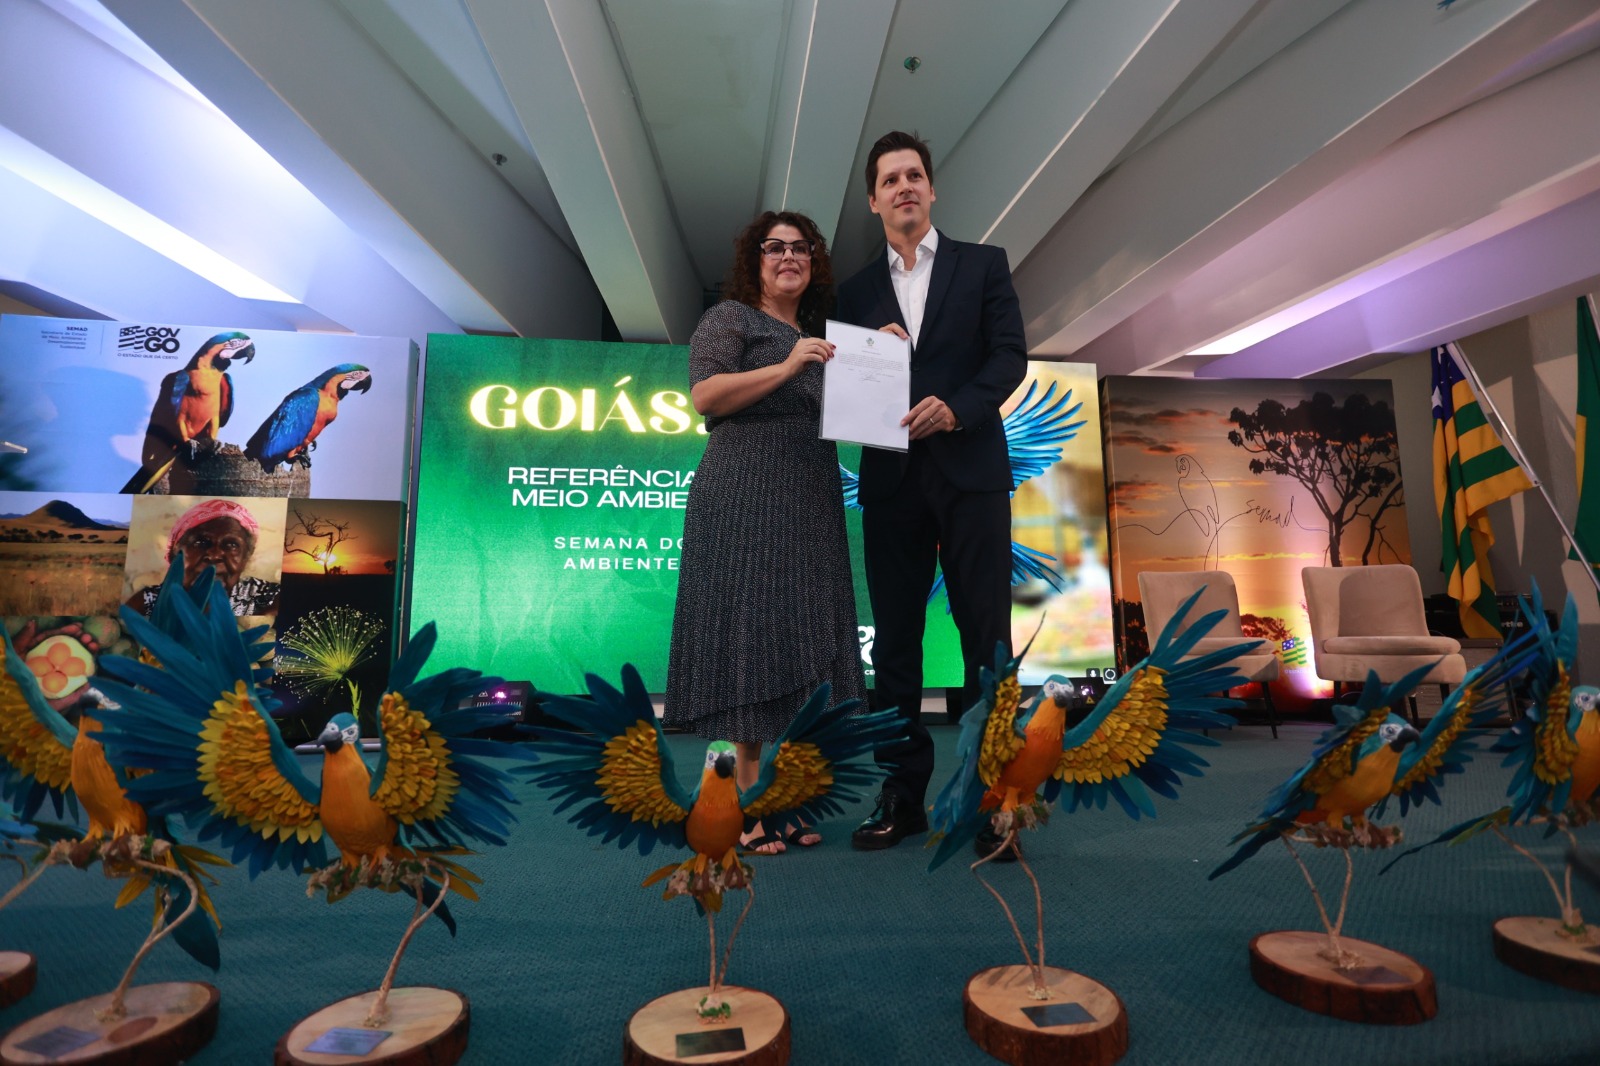 Semad lança programa Goiás Resiliente em evento com vice-governador